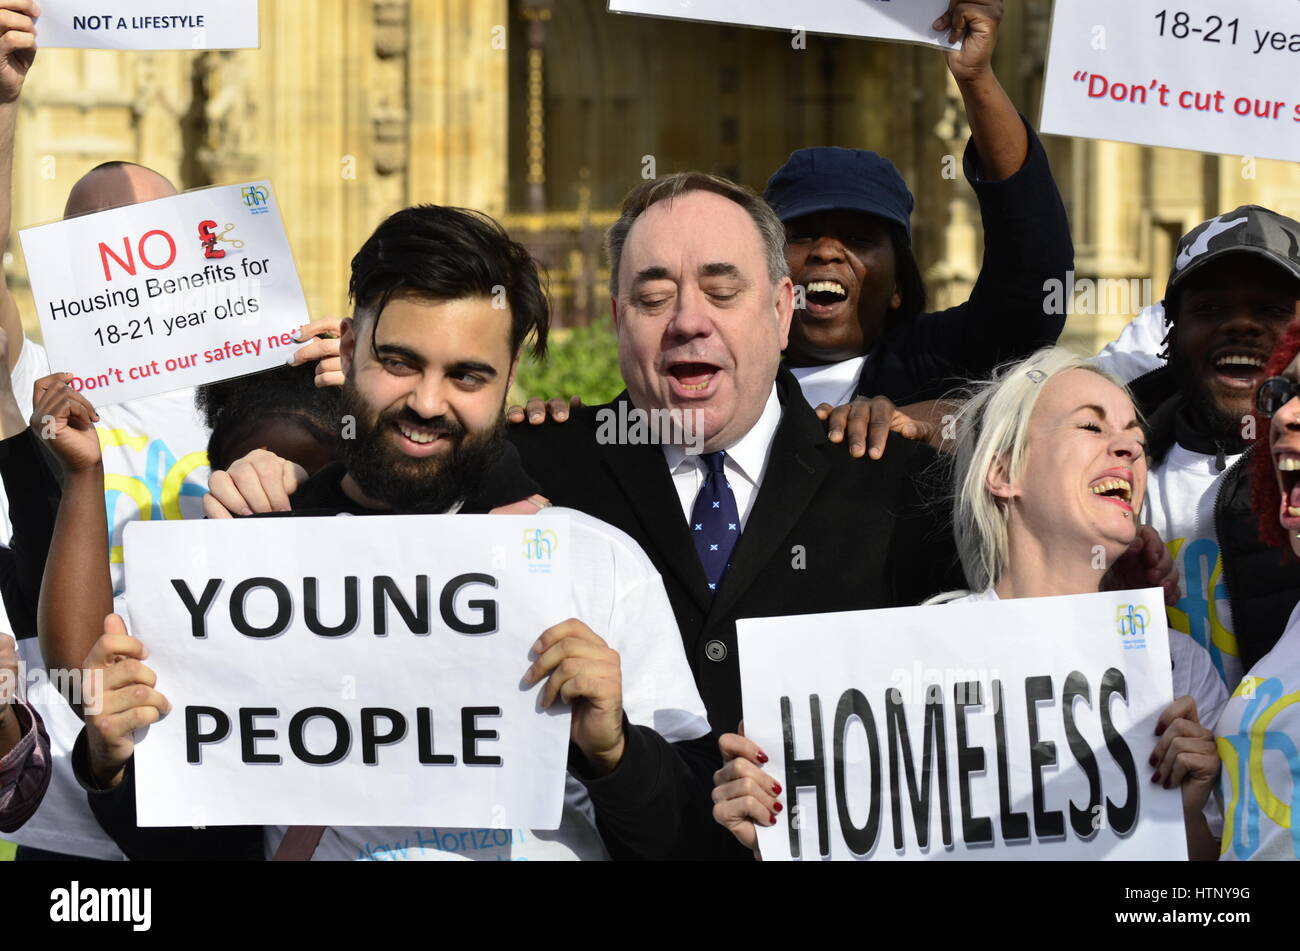 Londra, Regno Unito. 13 Mar, 2017. Alex Salmond MP è persuaso a unirsi a una manifestazione di protesta contro la scatola di taglio benefici ai giovani dopo che interrompono la sua intervista in TV. Credito: PjrFoto/Alamy Live News Foto Stock